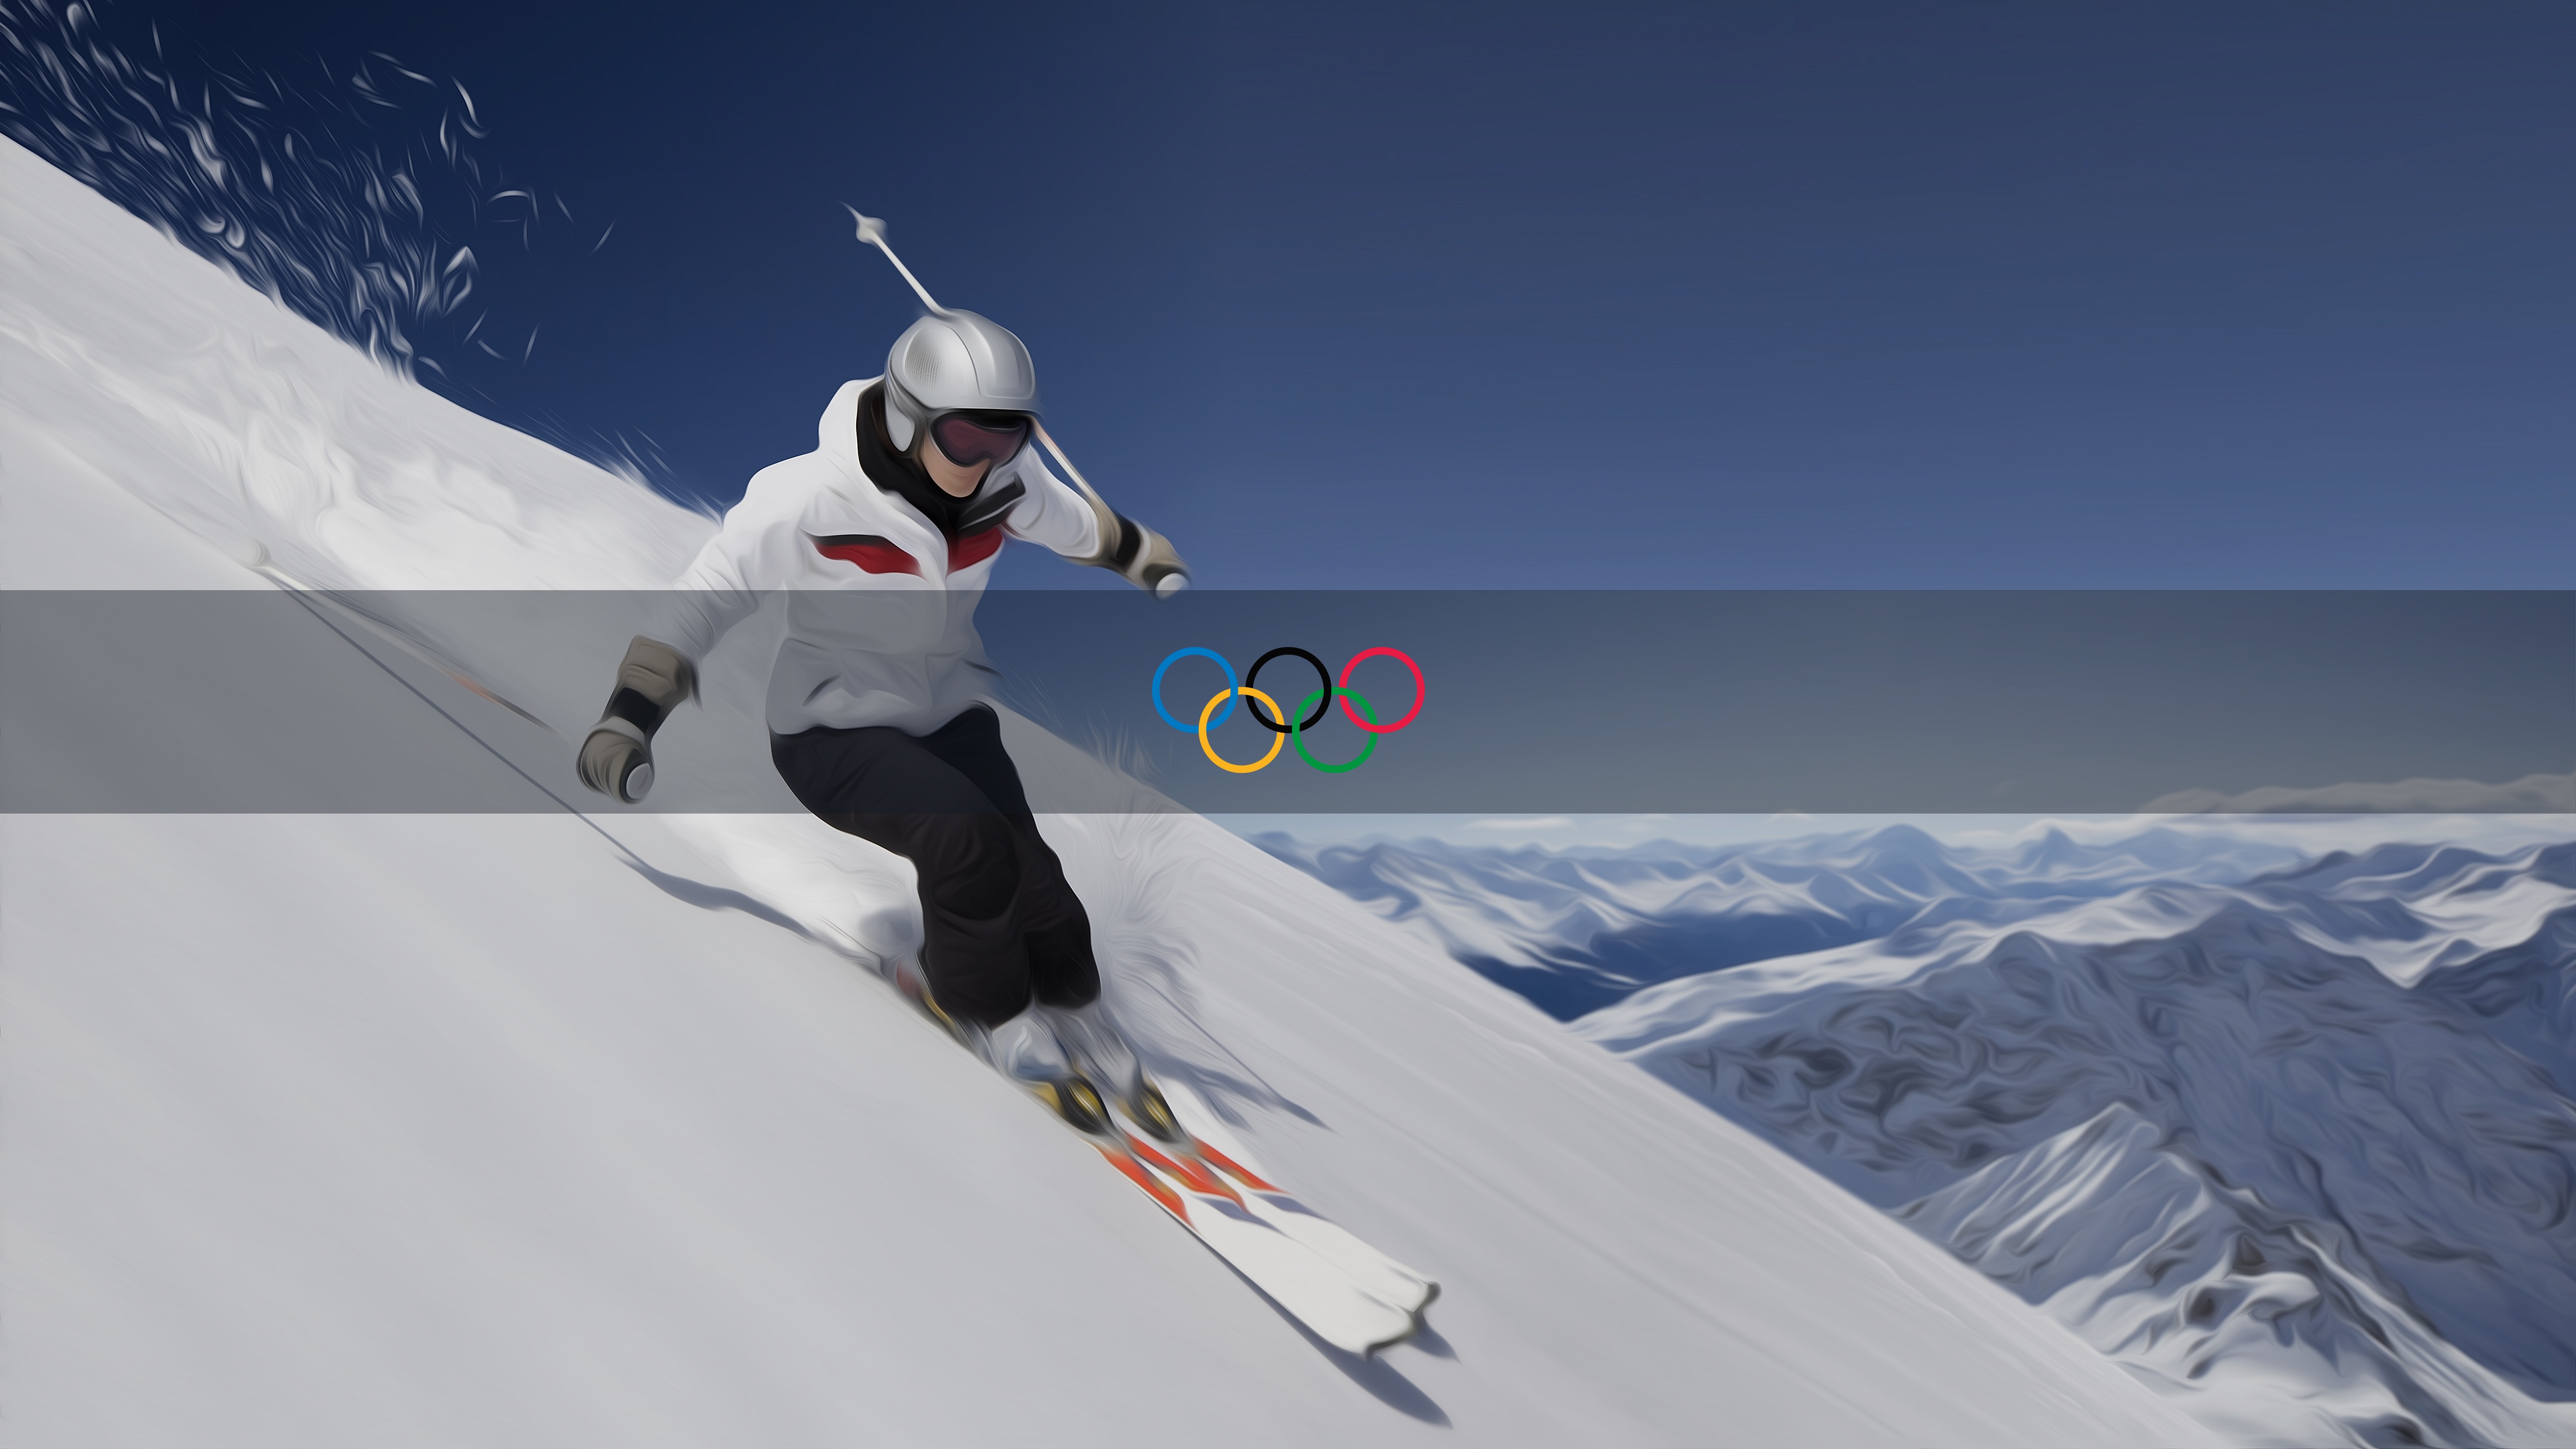 olympische tapete,schnee,ski,extremsport,erholung im freien,freestyle ski fahren